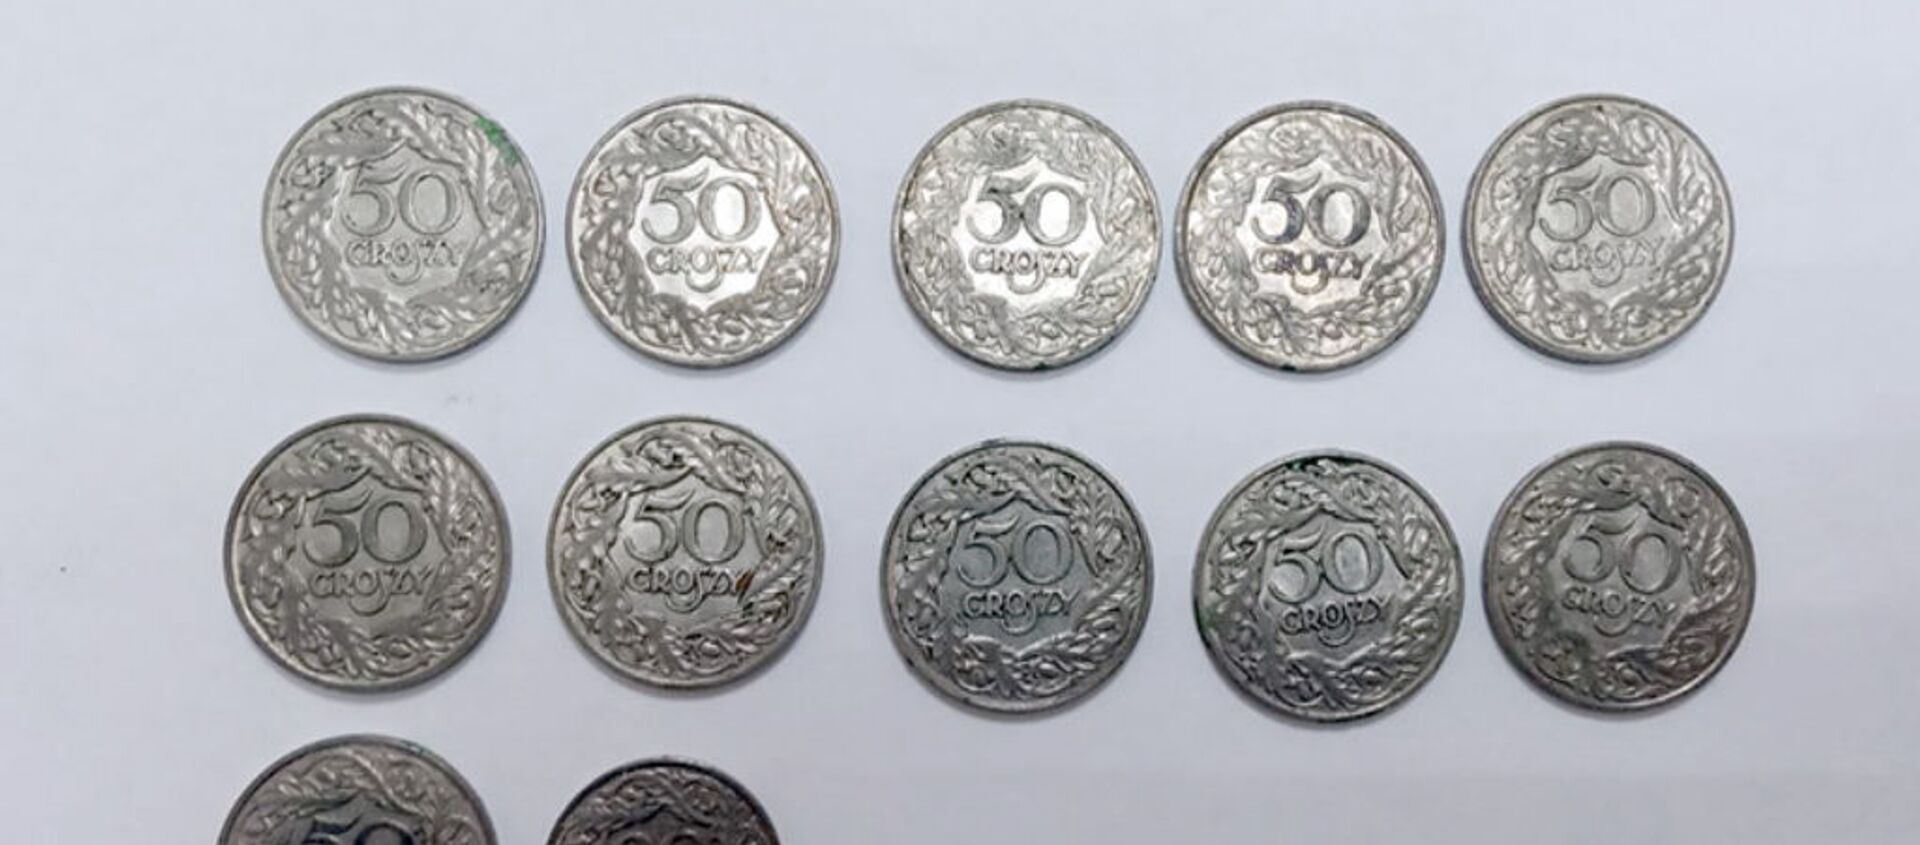 Иностранные монеты стали добычей воров в Брестской области - Sputnik Беларусь, 1920, 15.04.2021